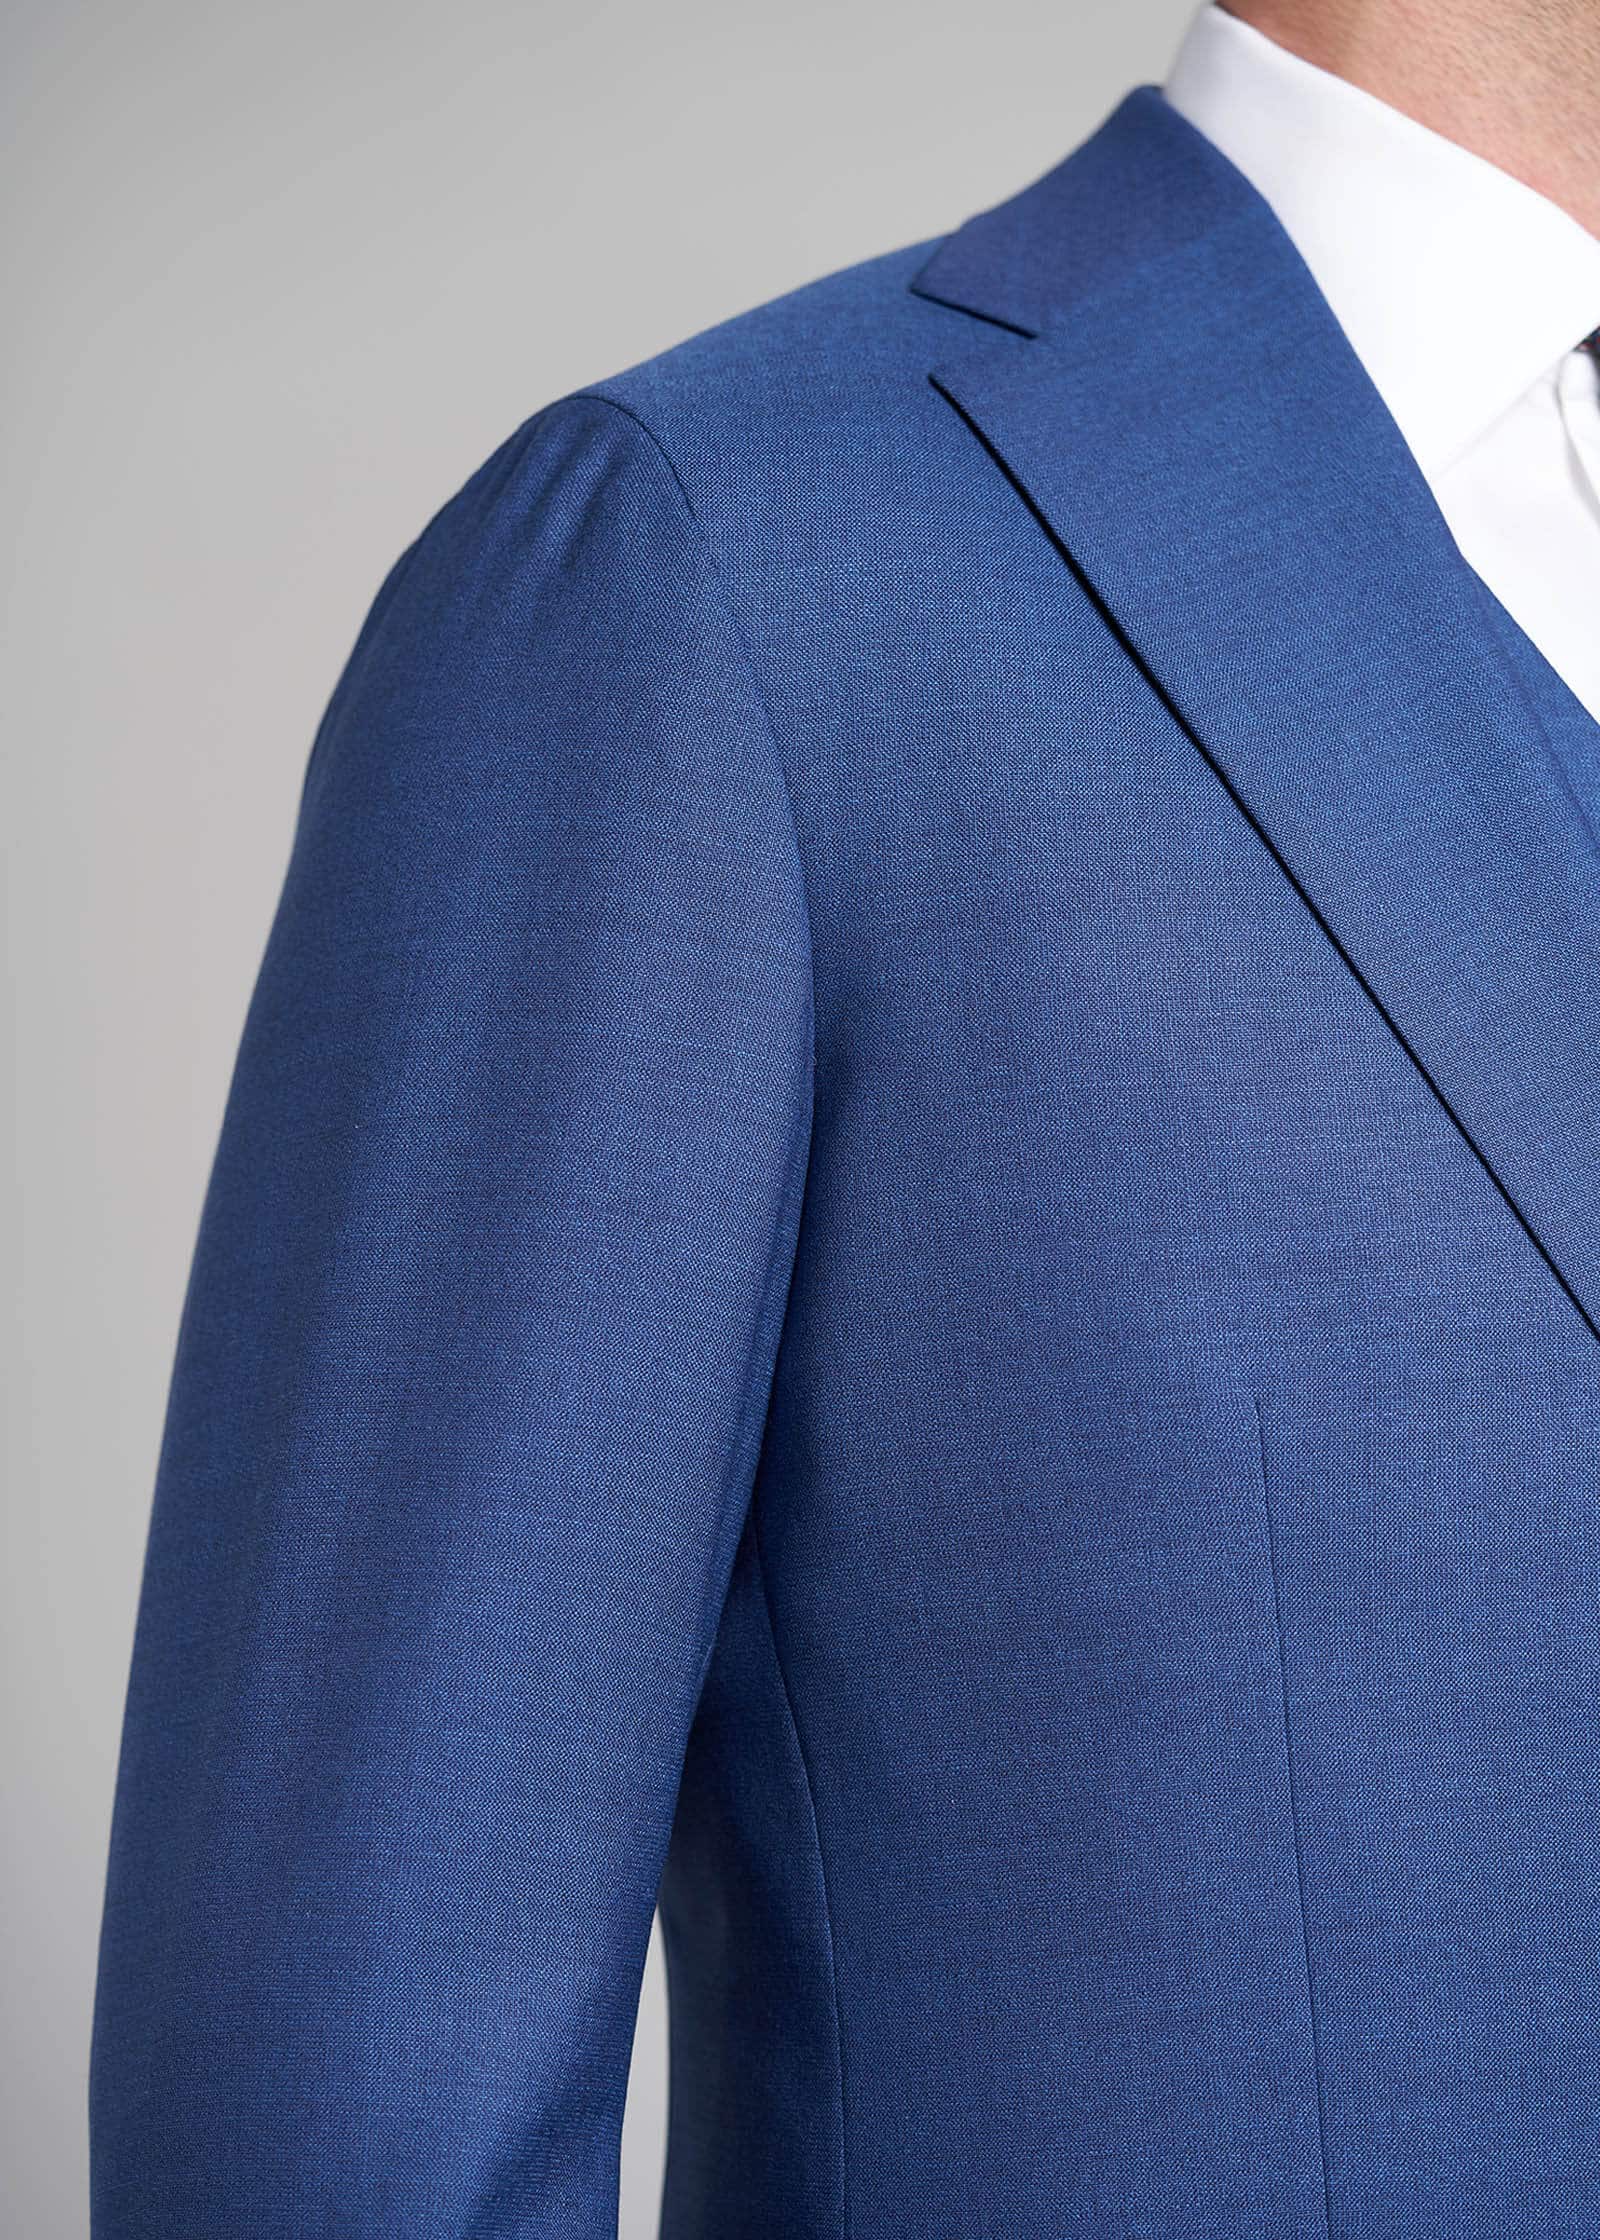 Blue-Tropical-Mond-Custom-Suit-Details-Shoulder